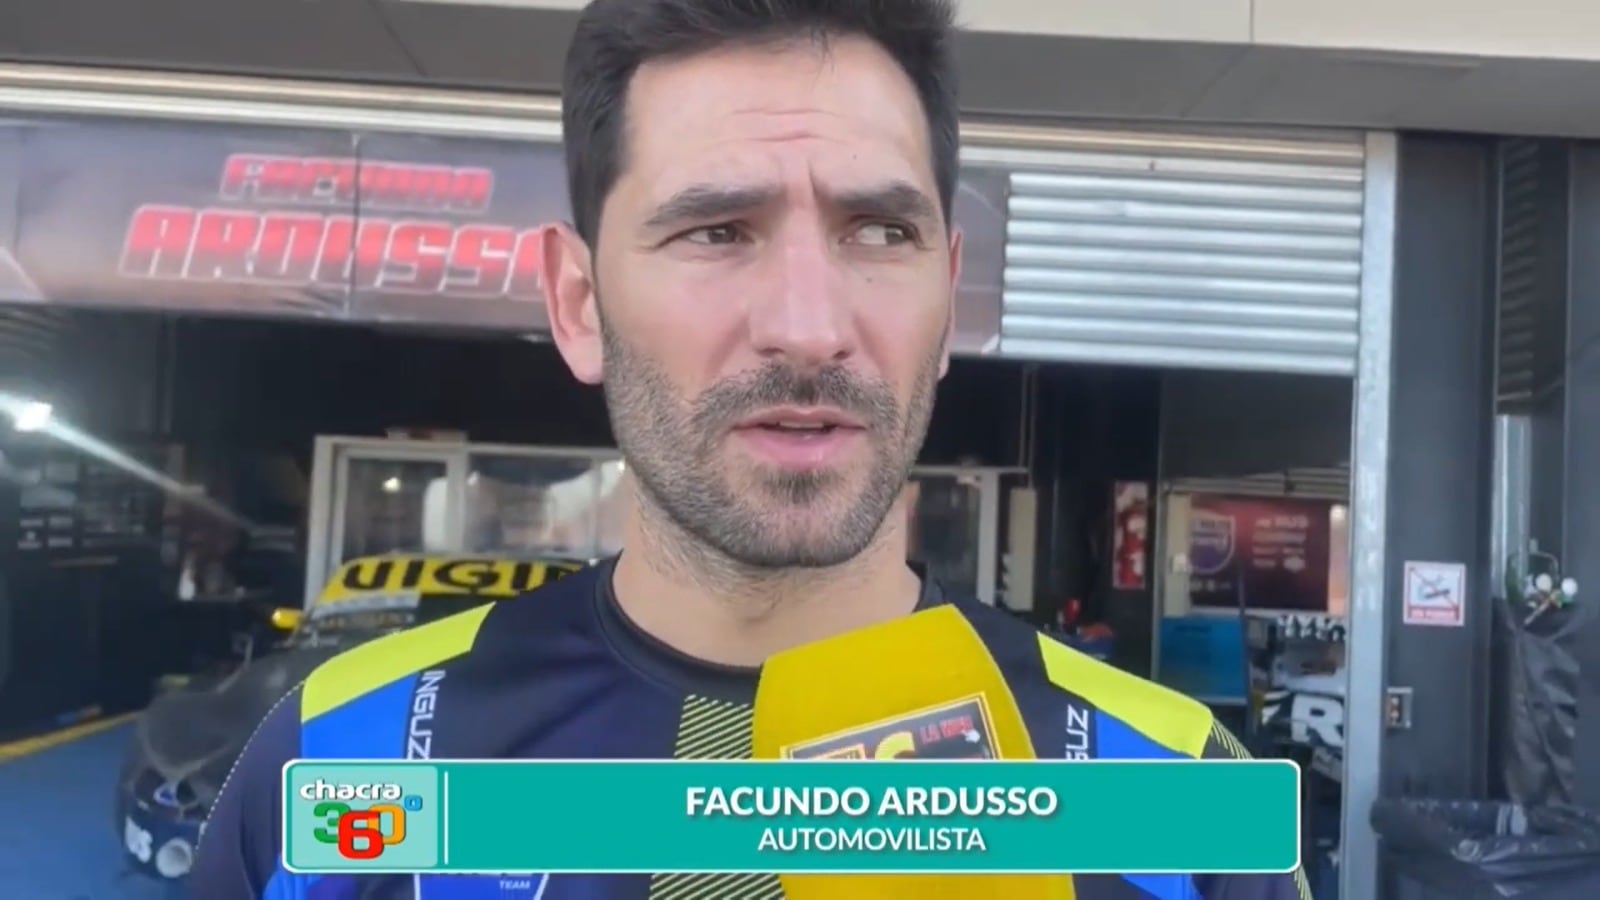 Facundo Ardusso, uno de los automovilistas más destacados del país